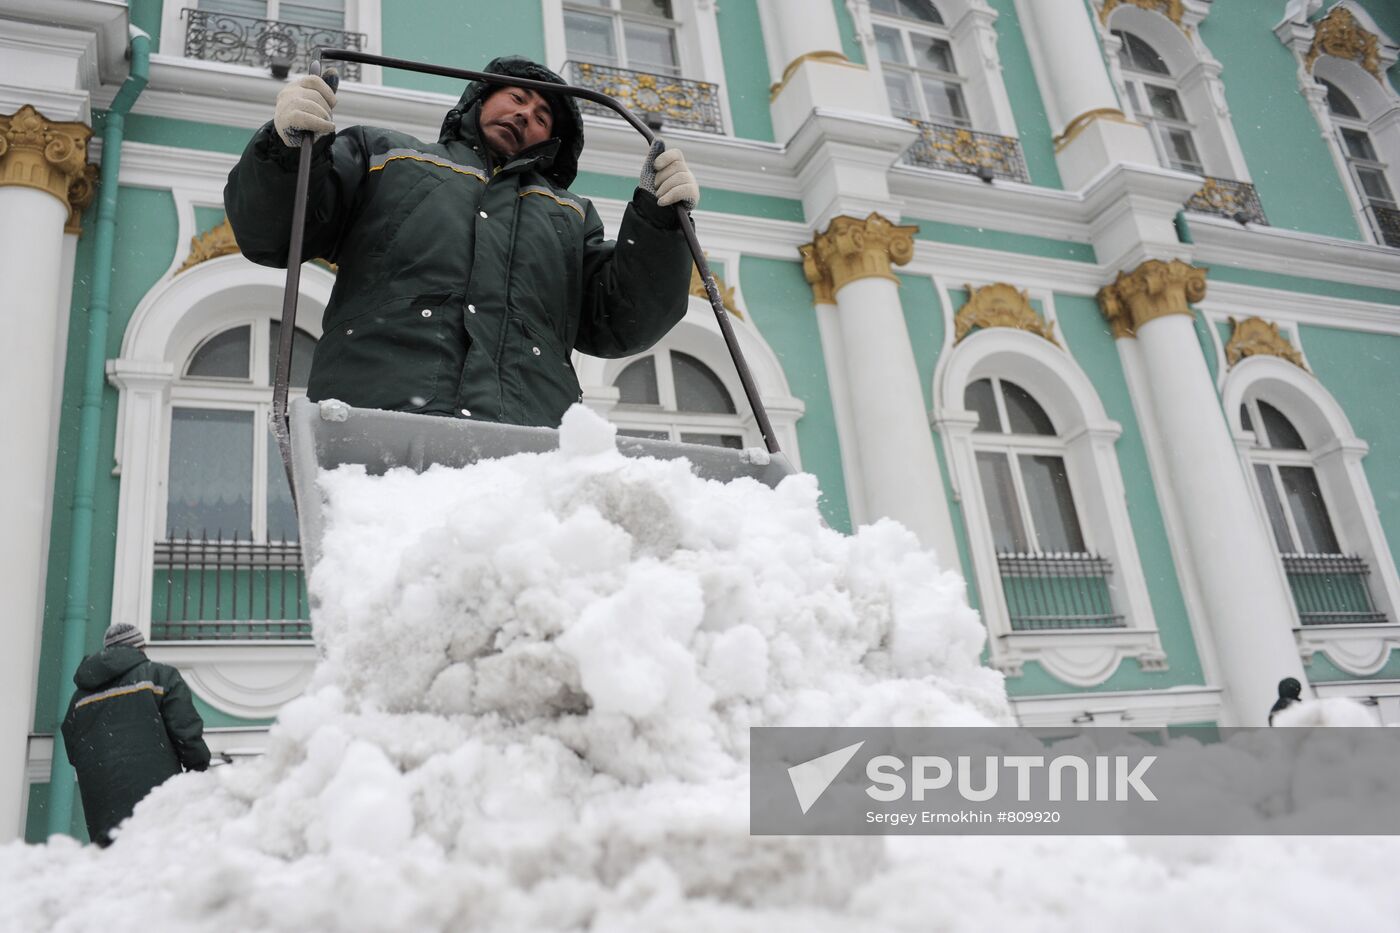 Snowfall in St.Petersburg